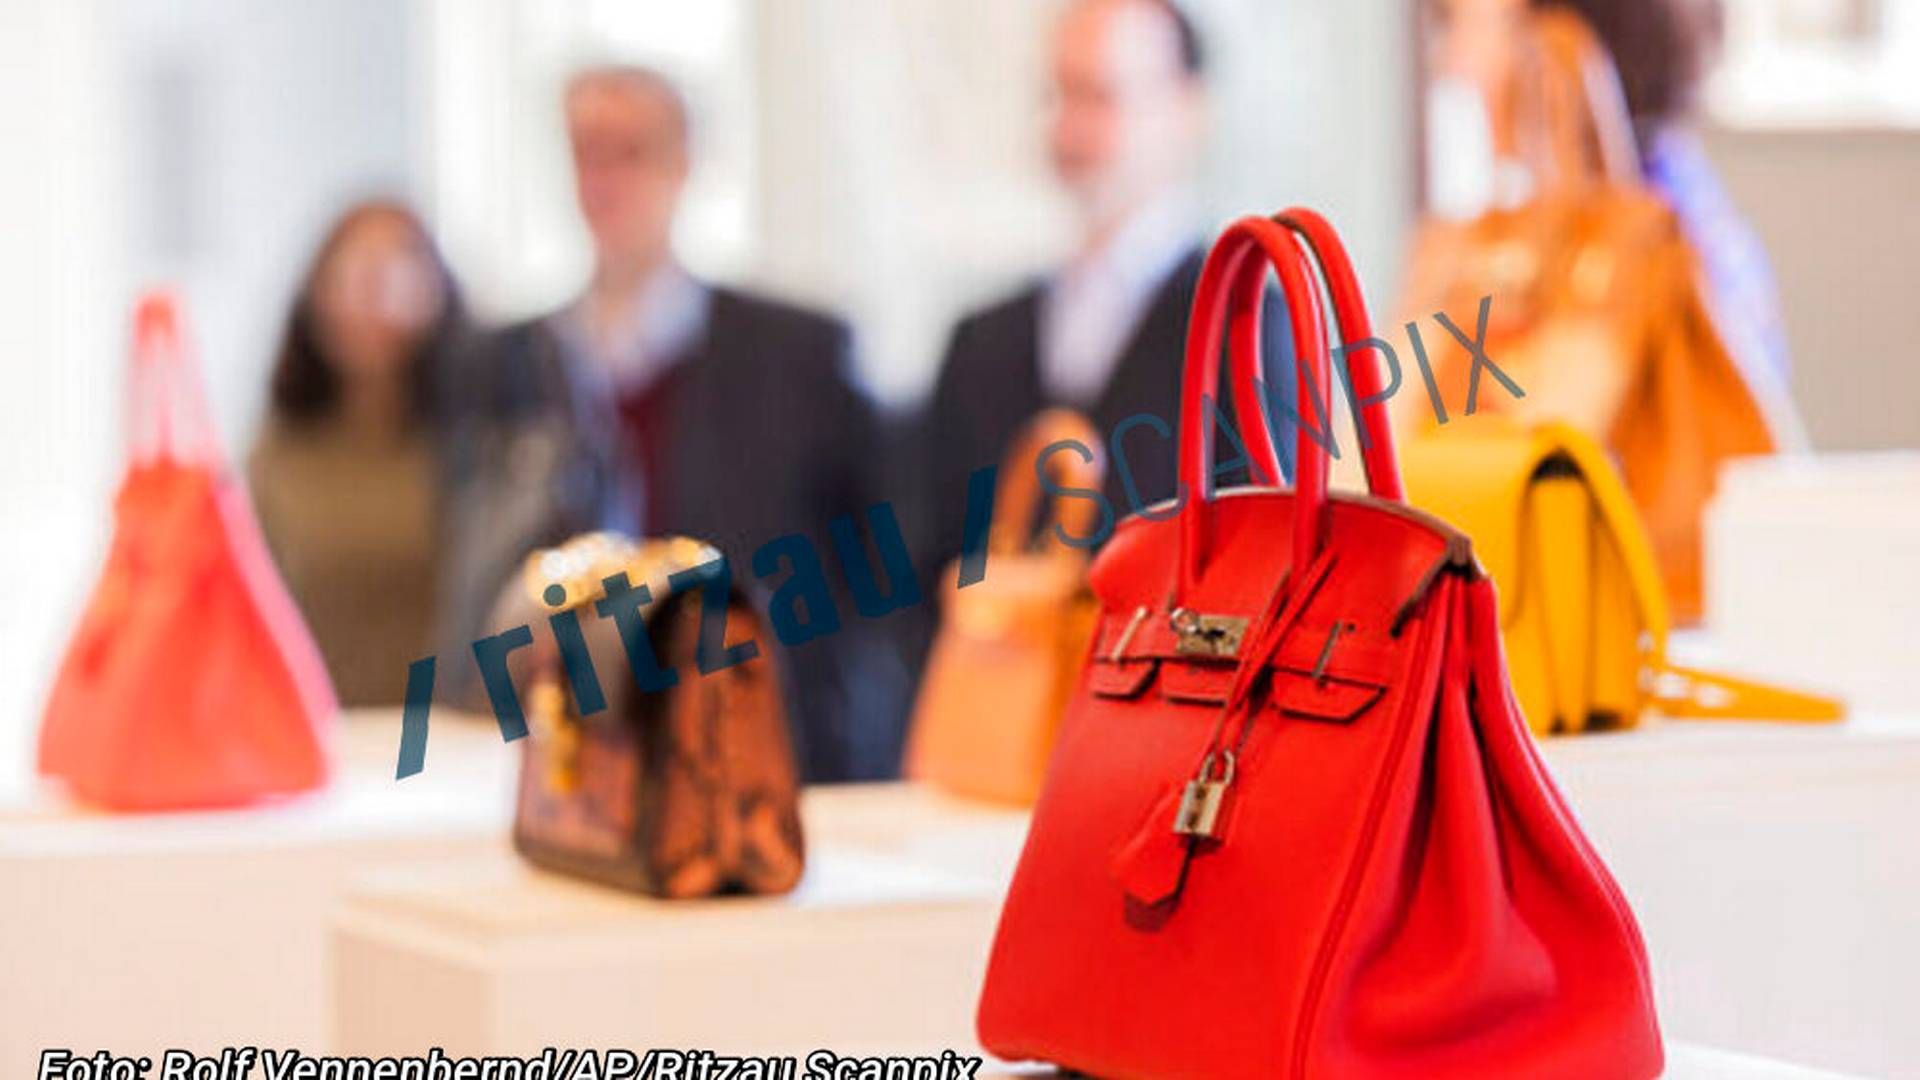 klasse Jet Arbejdsløs Fransk modehus vinder copyright-sag om digitale tasker — DetailWatch